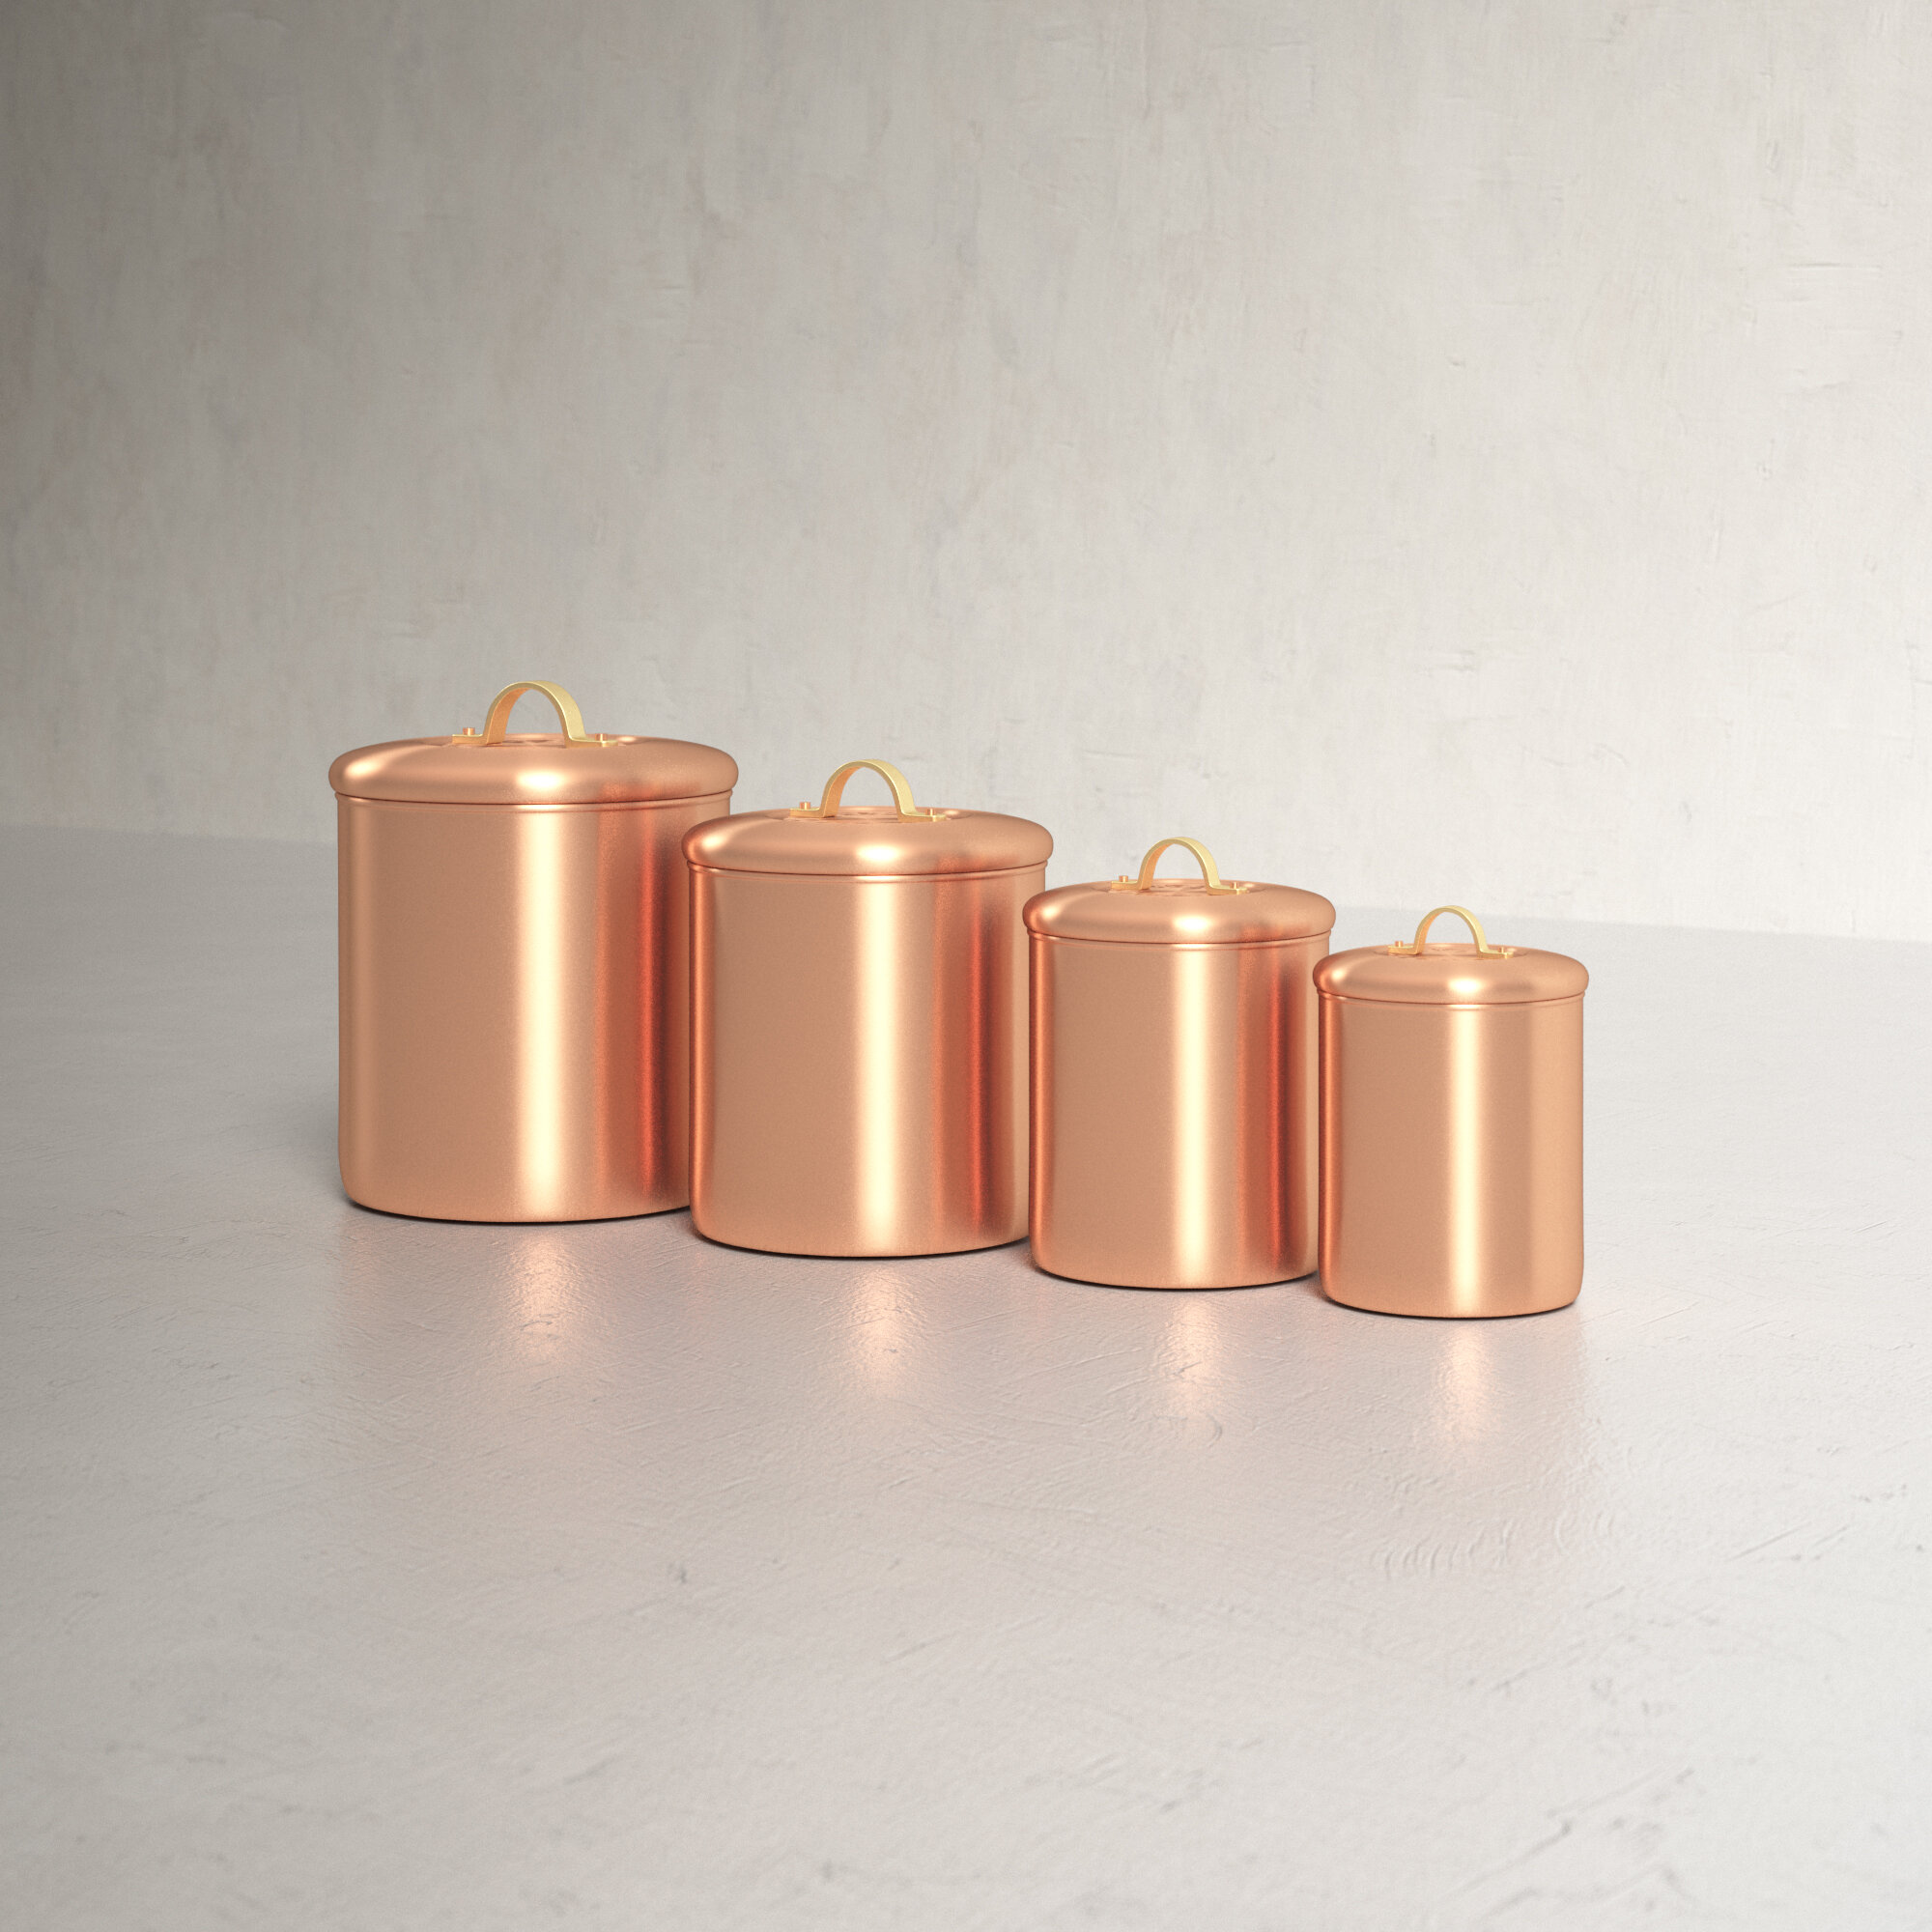 4 Vintage Copper Kitchen Canister Set - Etsy in 2022 - Copper kitchen  canisters, Copper kitchen, Kitchen canisters